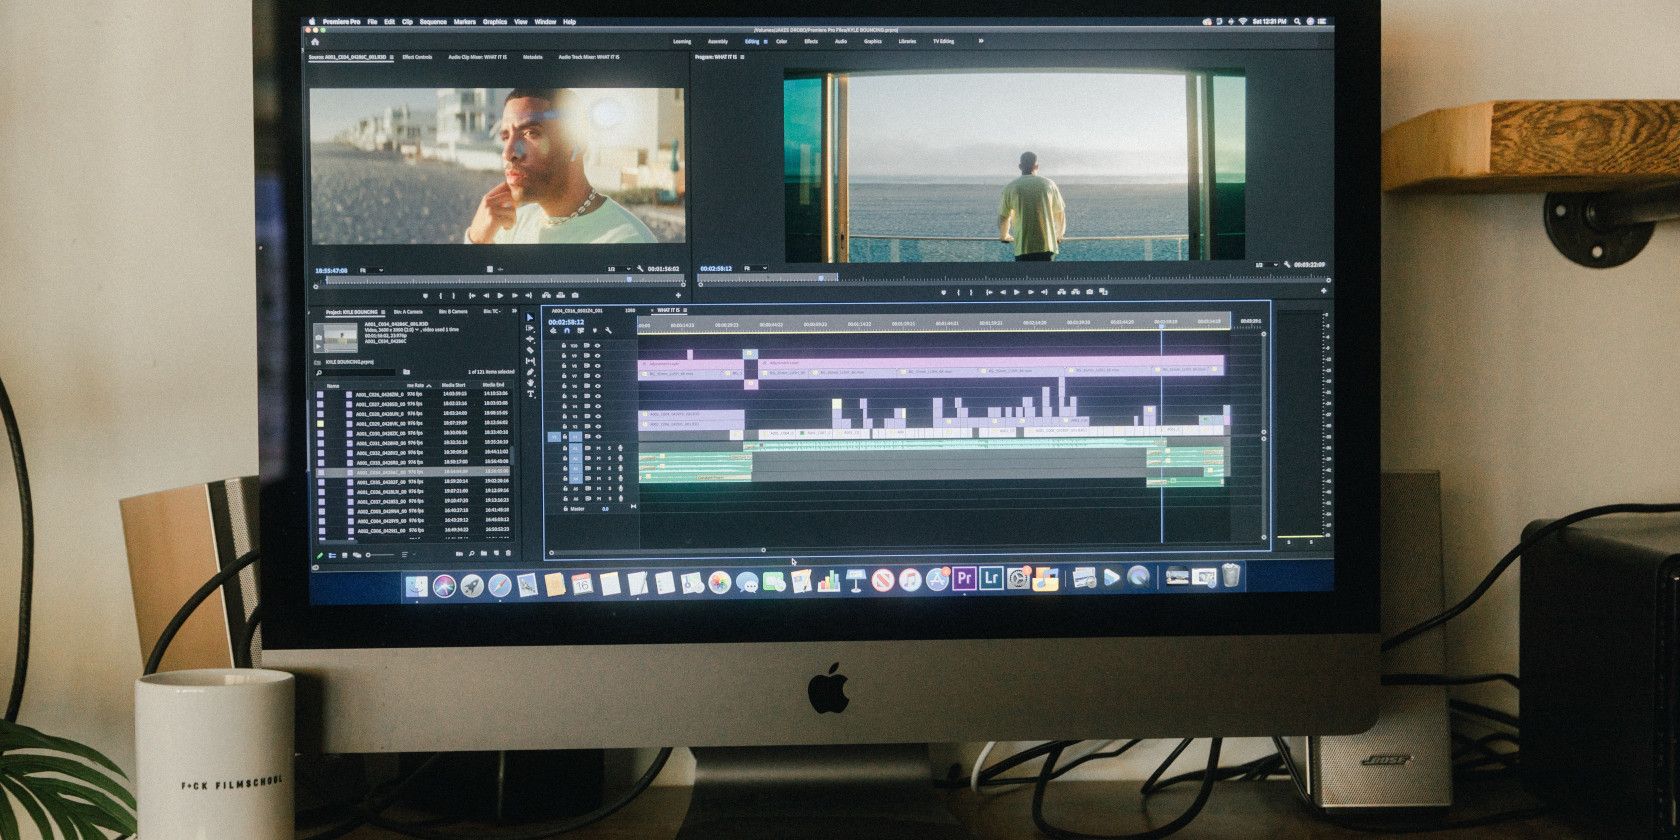 Adobe Premiere Pro monitors